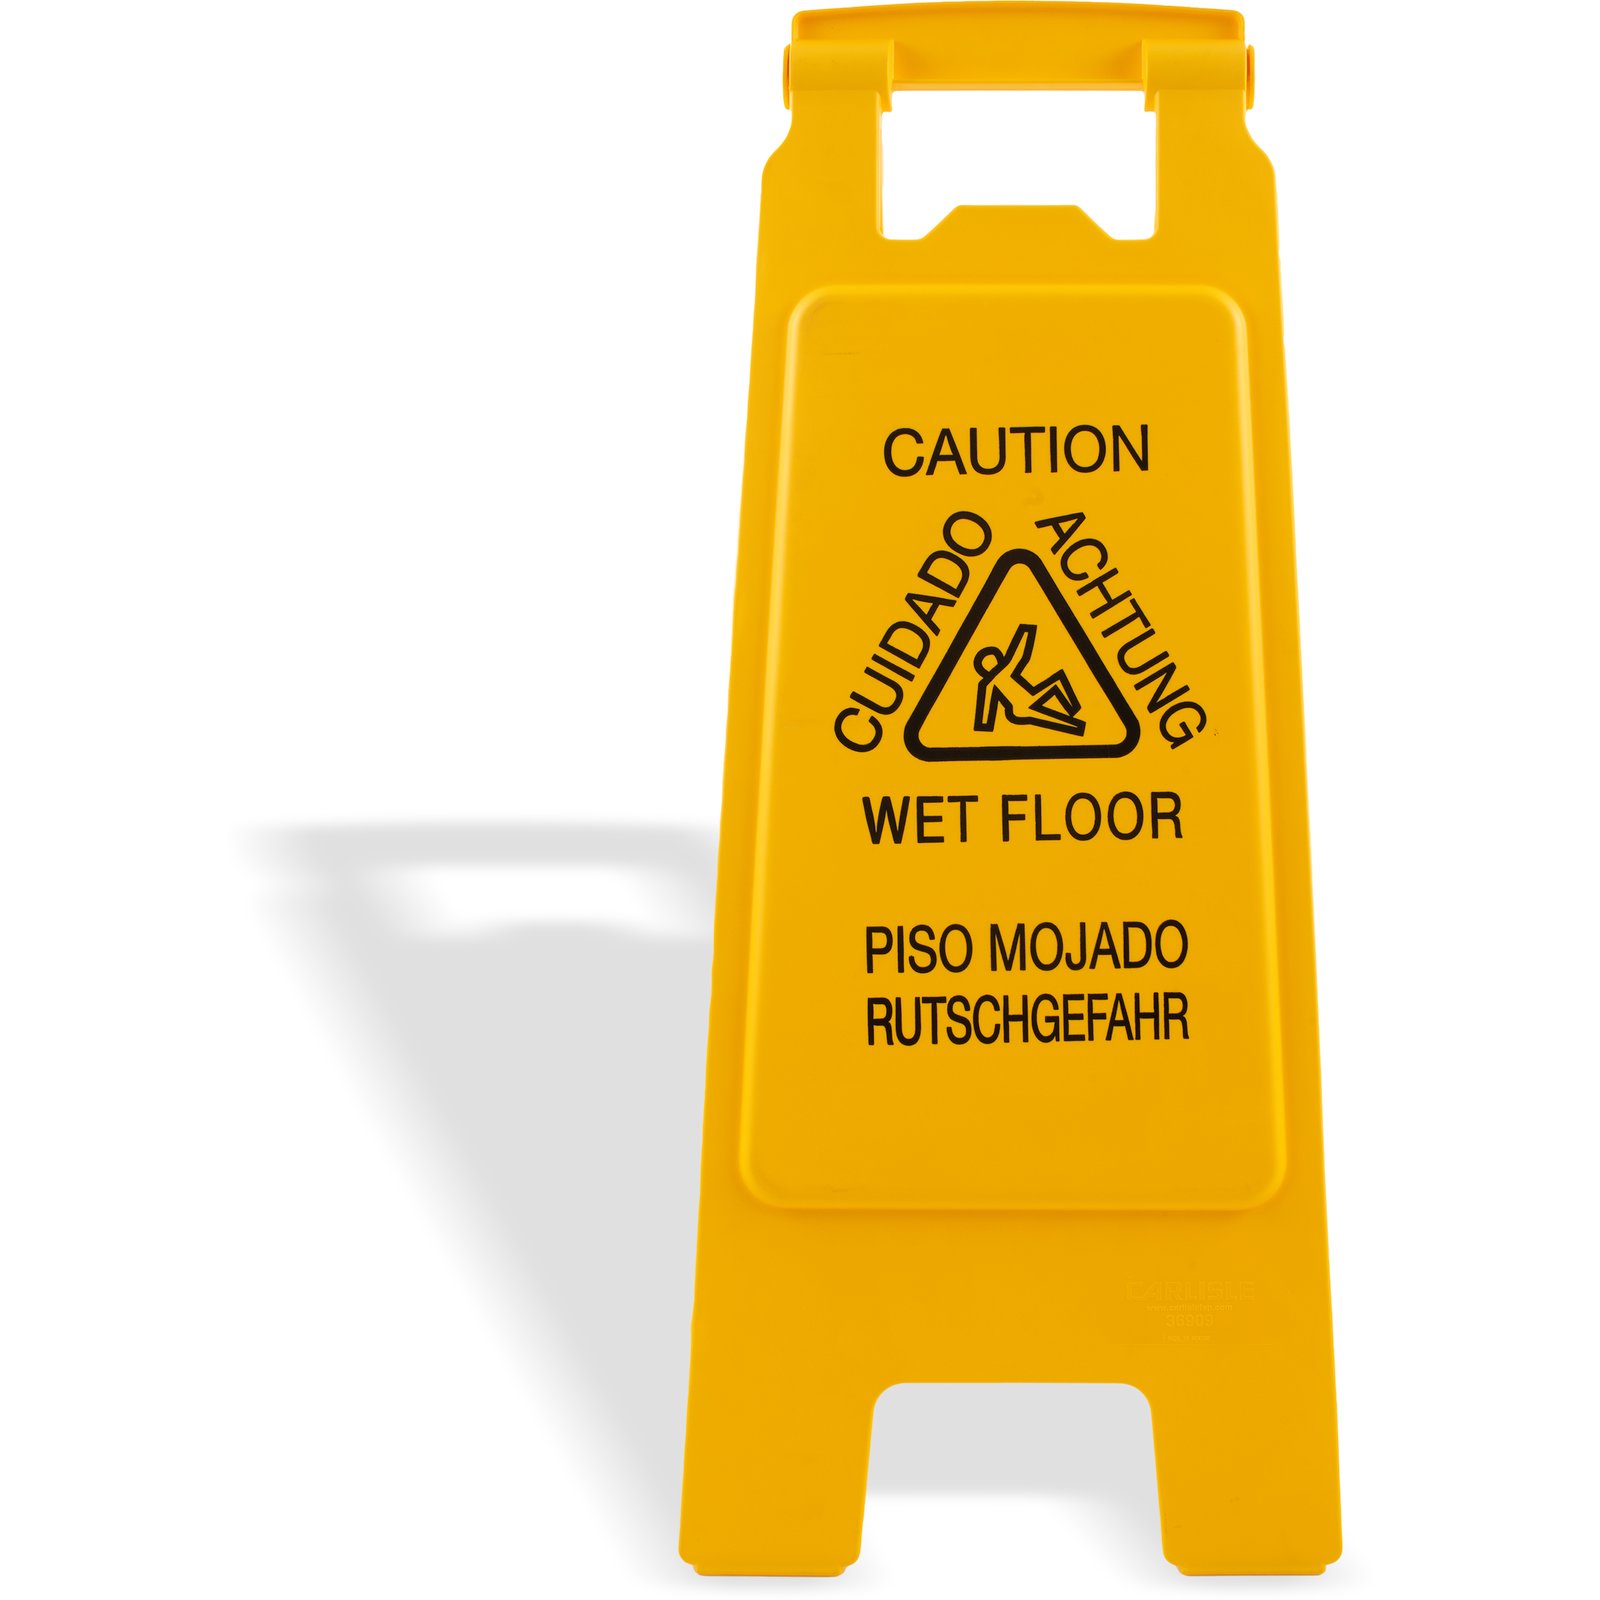 Keep wet floors as they. Wet Floor sign. Wet Floor. Wet Floor USA. Wet Floor bottom.